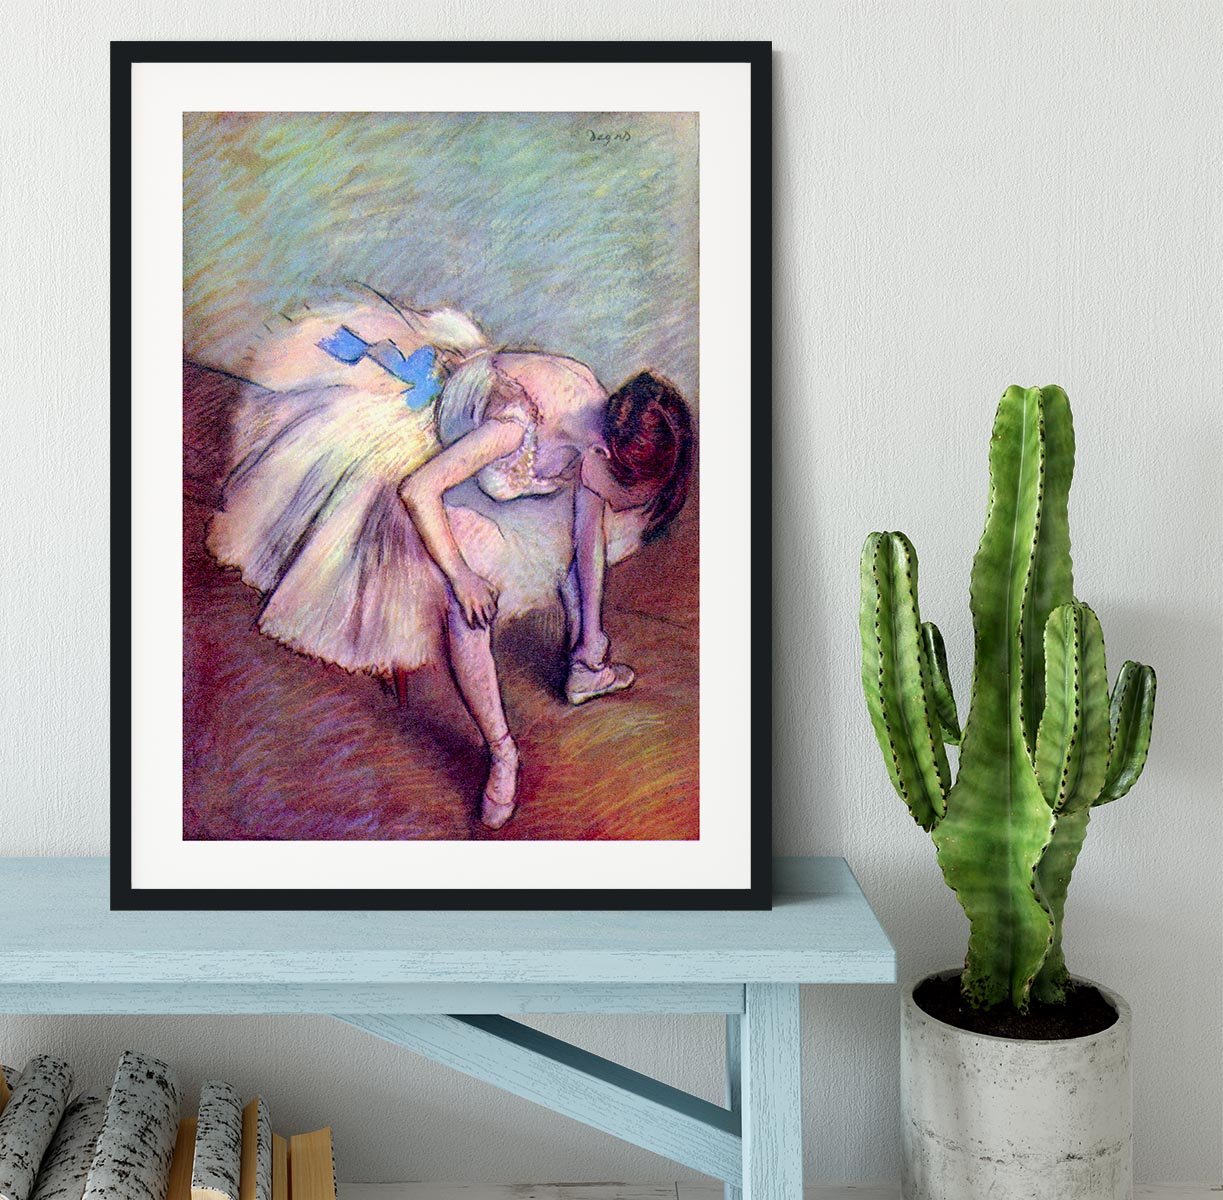 Dancer 2 by Degas Framed Print - Canvas Art Rocks - 1